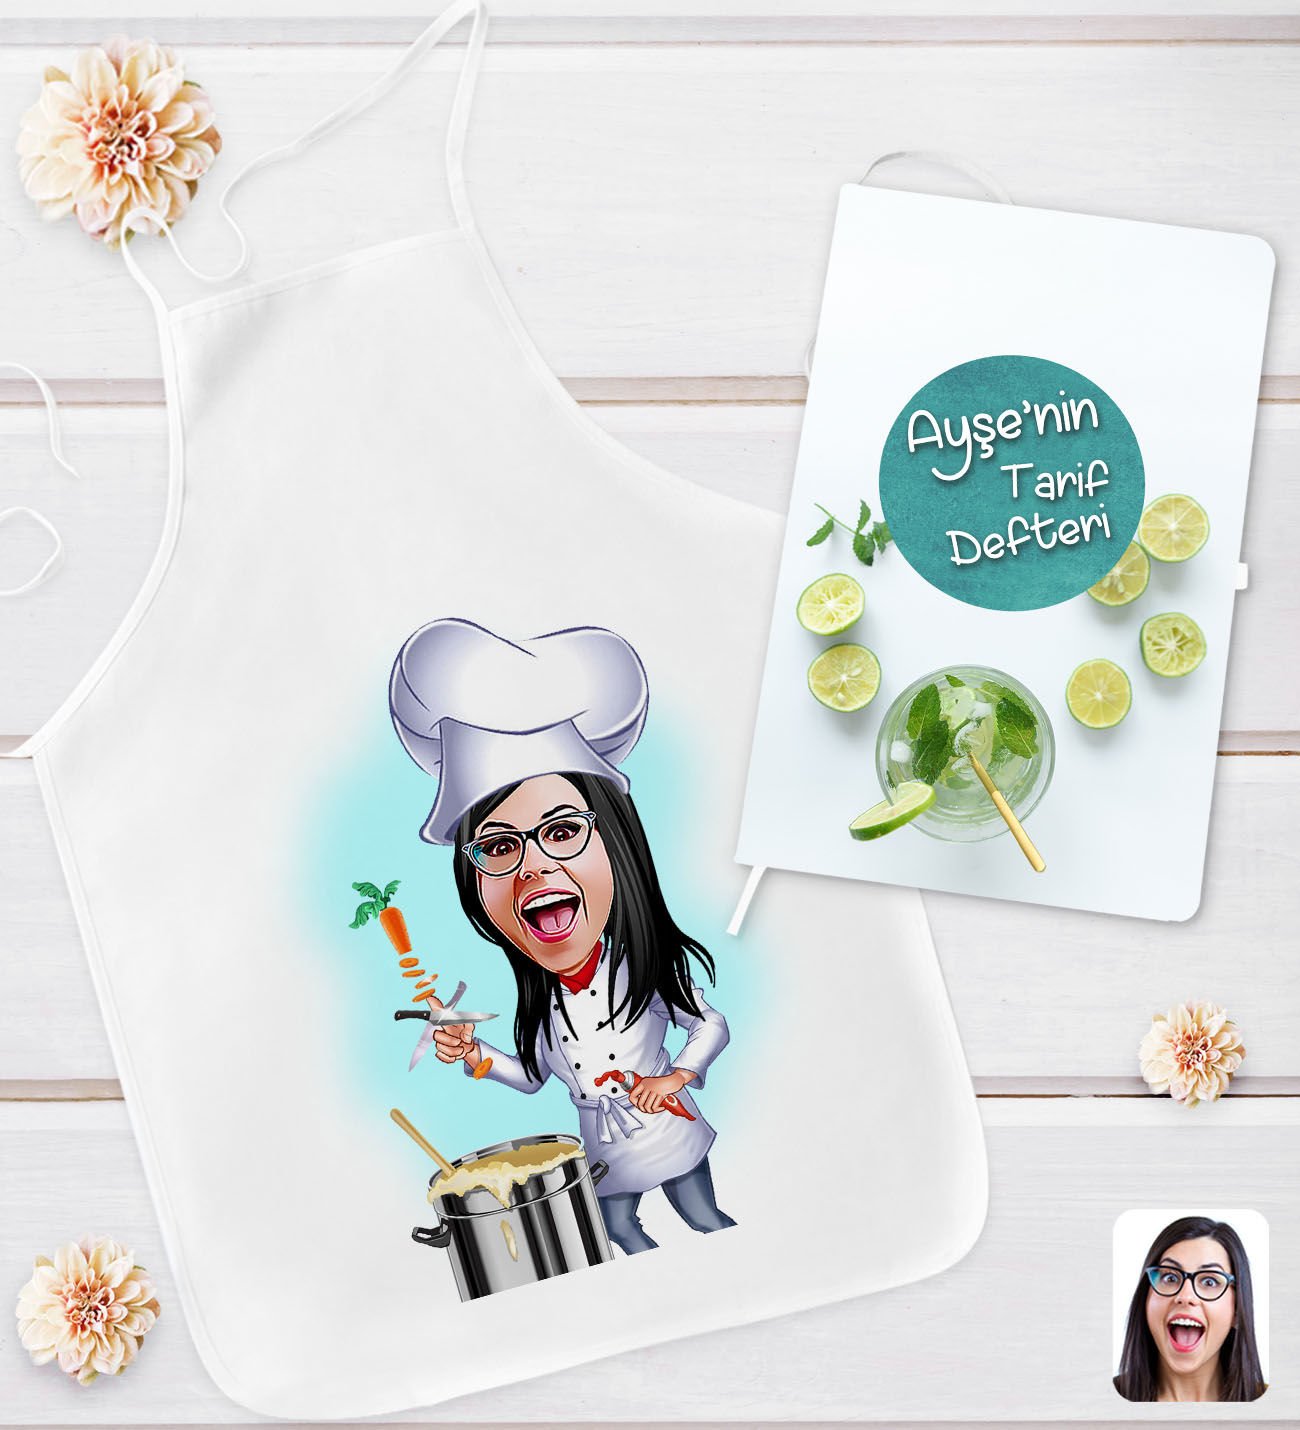 BK Gift Kişiye Özel Karikatürlü Aşçı Anne Tasarımlı Mutfak Önlüğü ve Yemek Tarif Defteri Hediye Seti-4, Anneye Hediye, Anneler Günü Hediyeleri